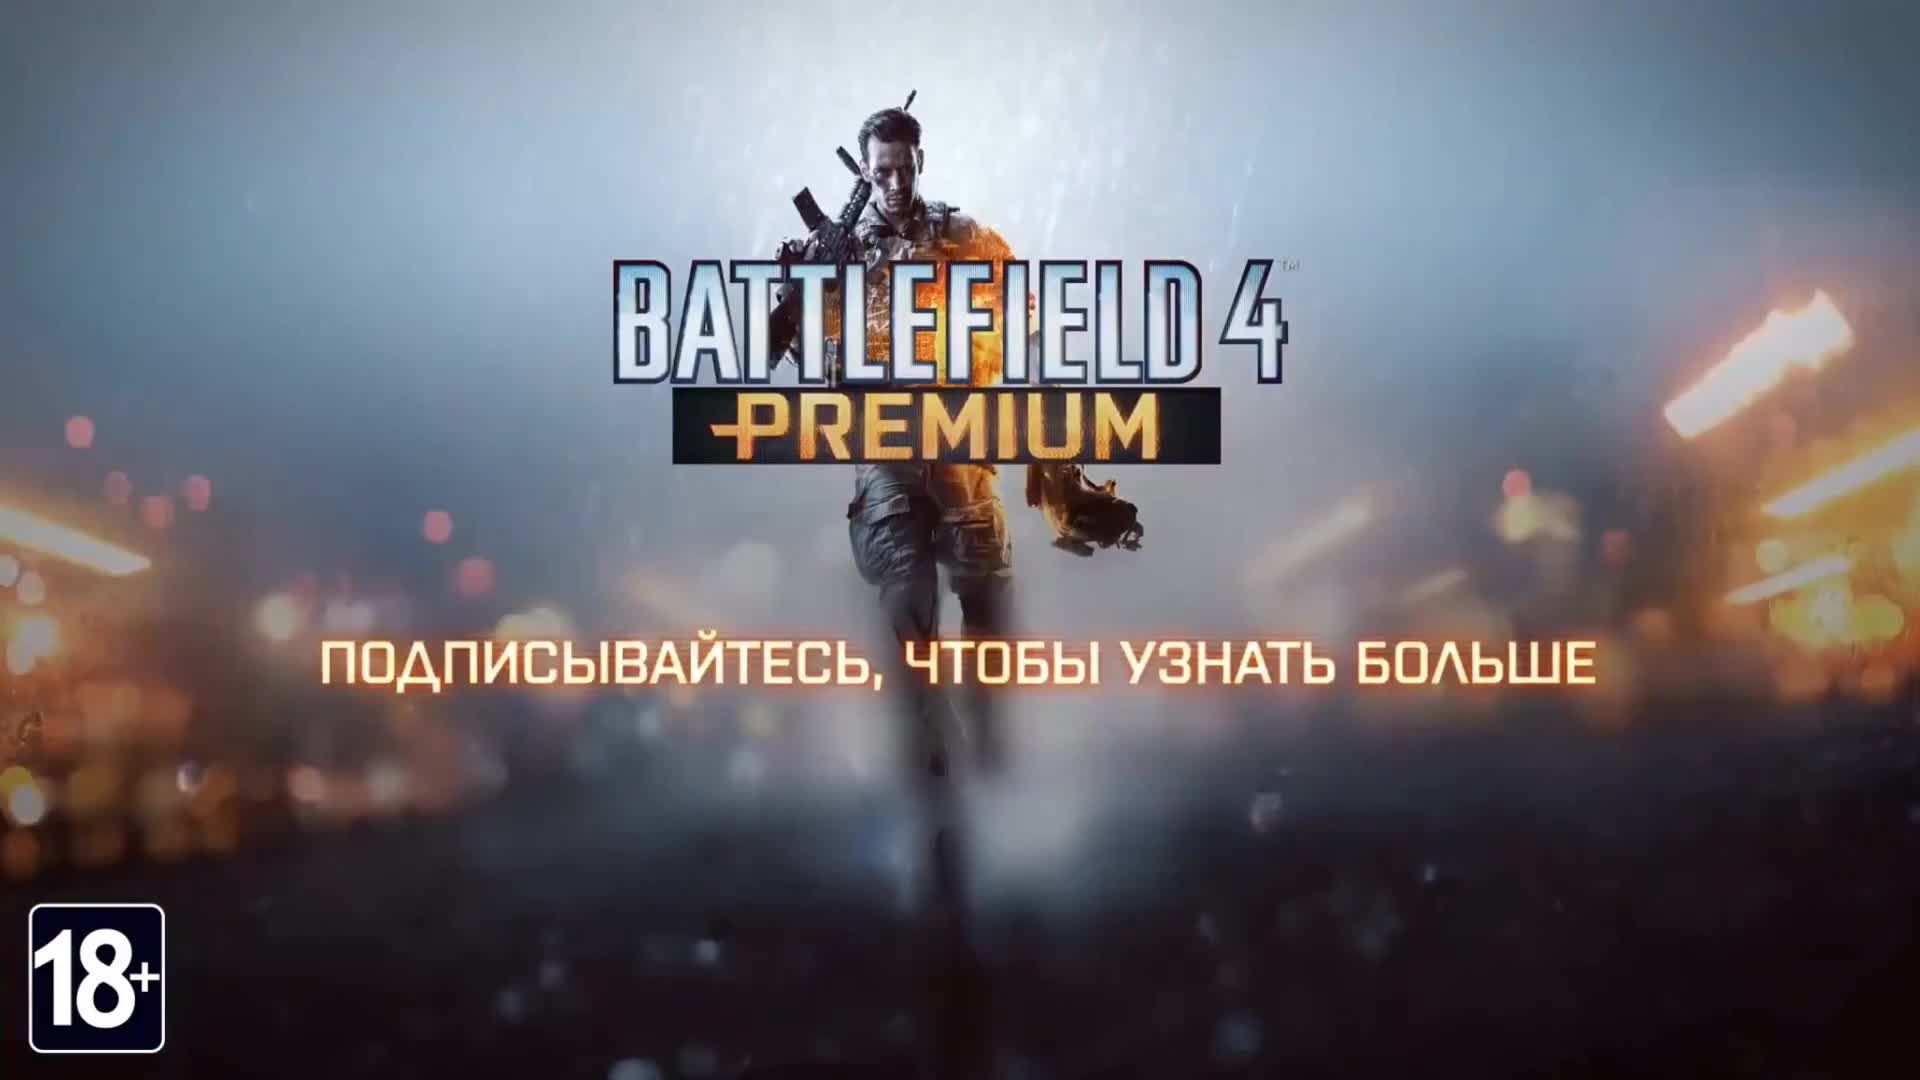 Battlefield 4 - Final Stand DLC teaser